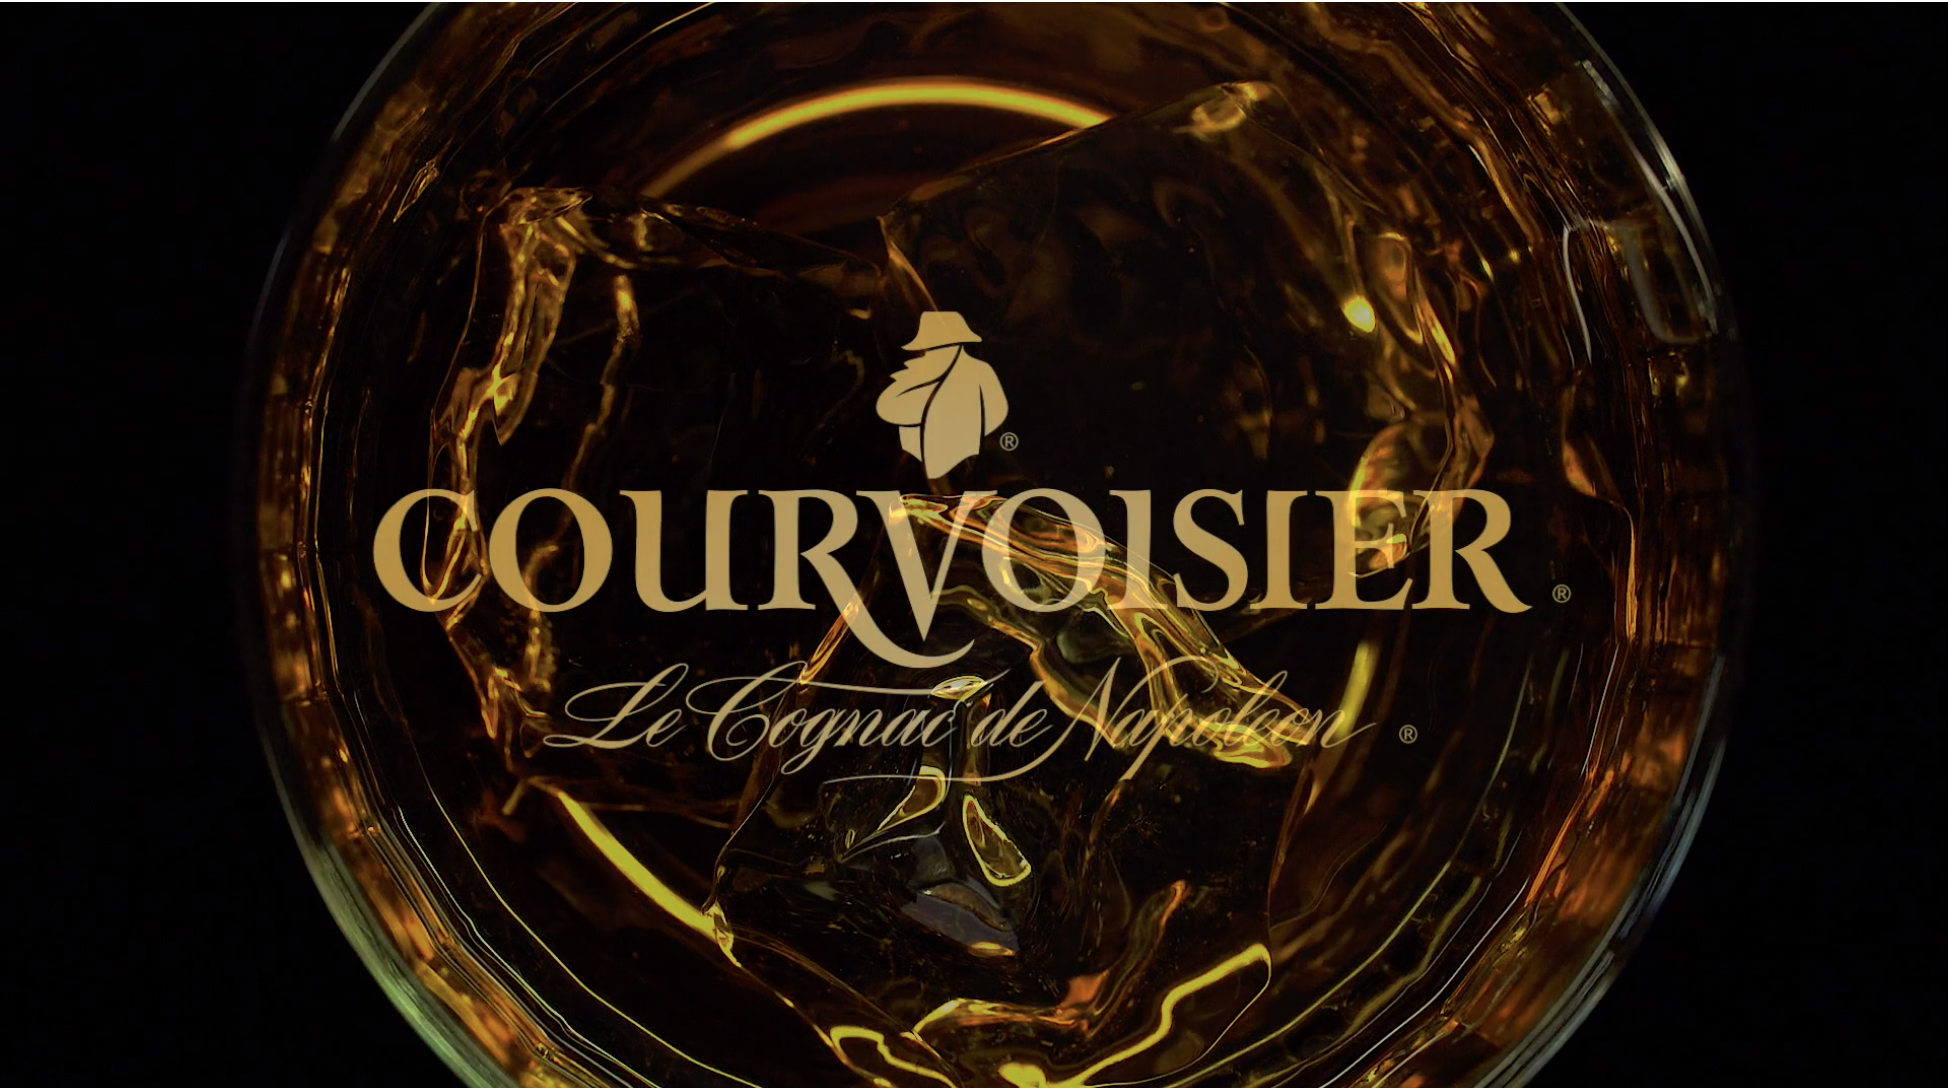  Courvoisier 